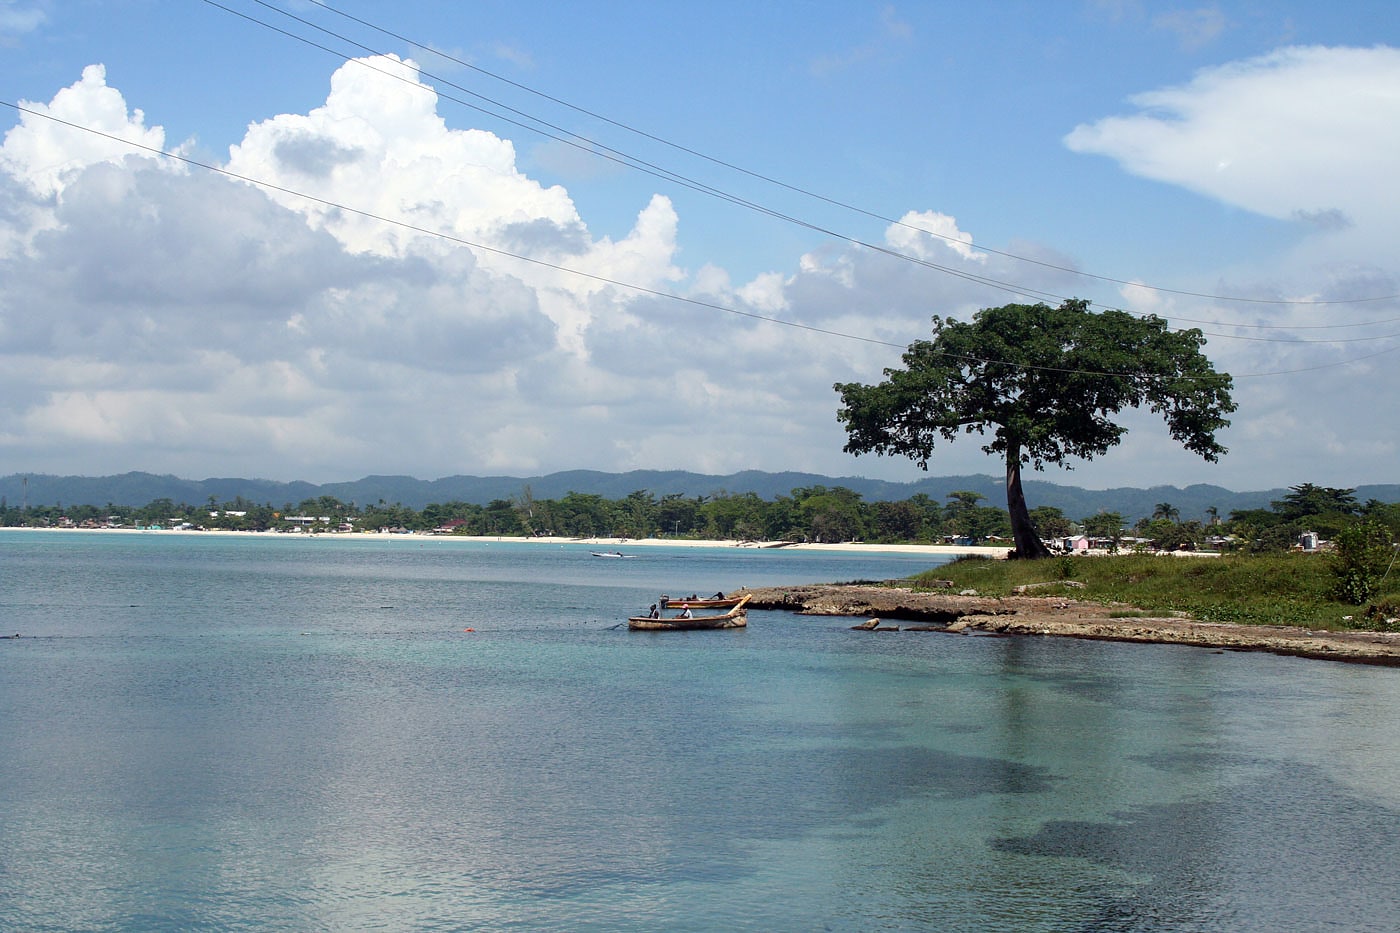 Negril, Jamaica